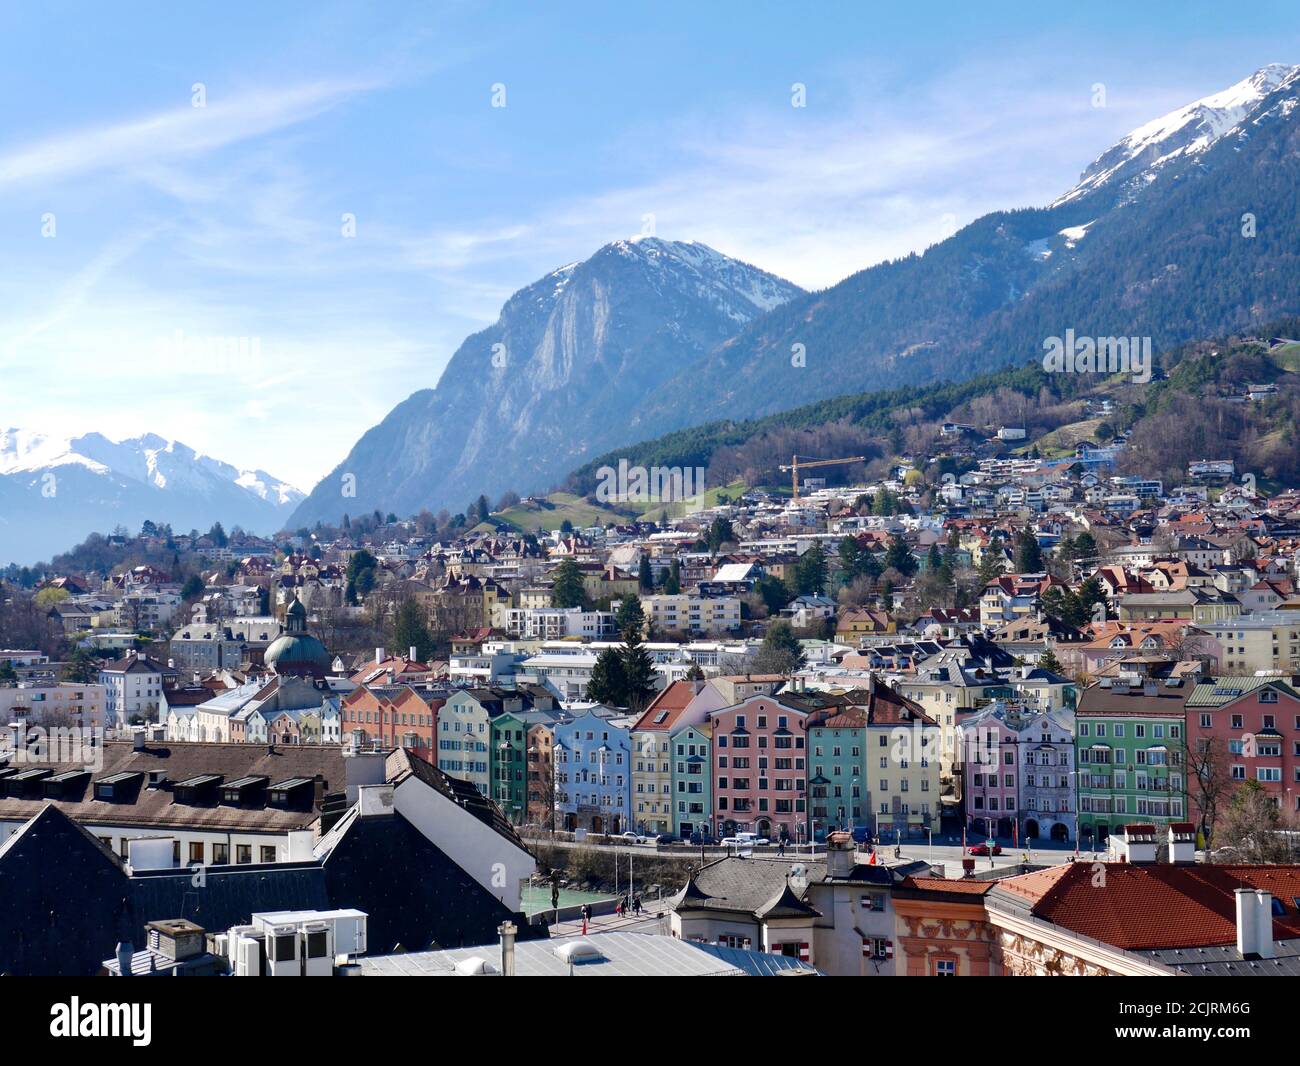 Schöne farbige Häuser in Innsbruck an dem Inn. Aufgenommen aus der Vogelperspektive. Stock Photo